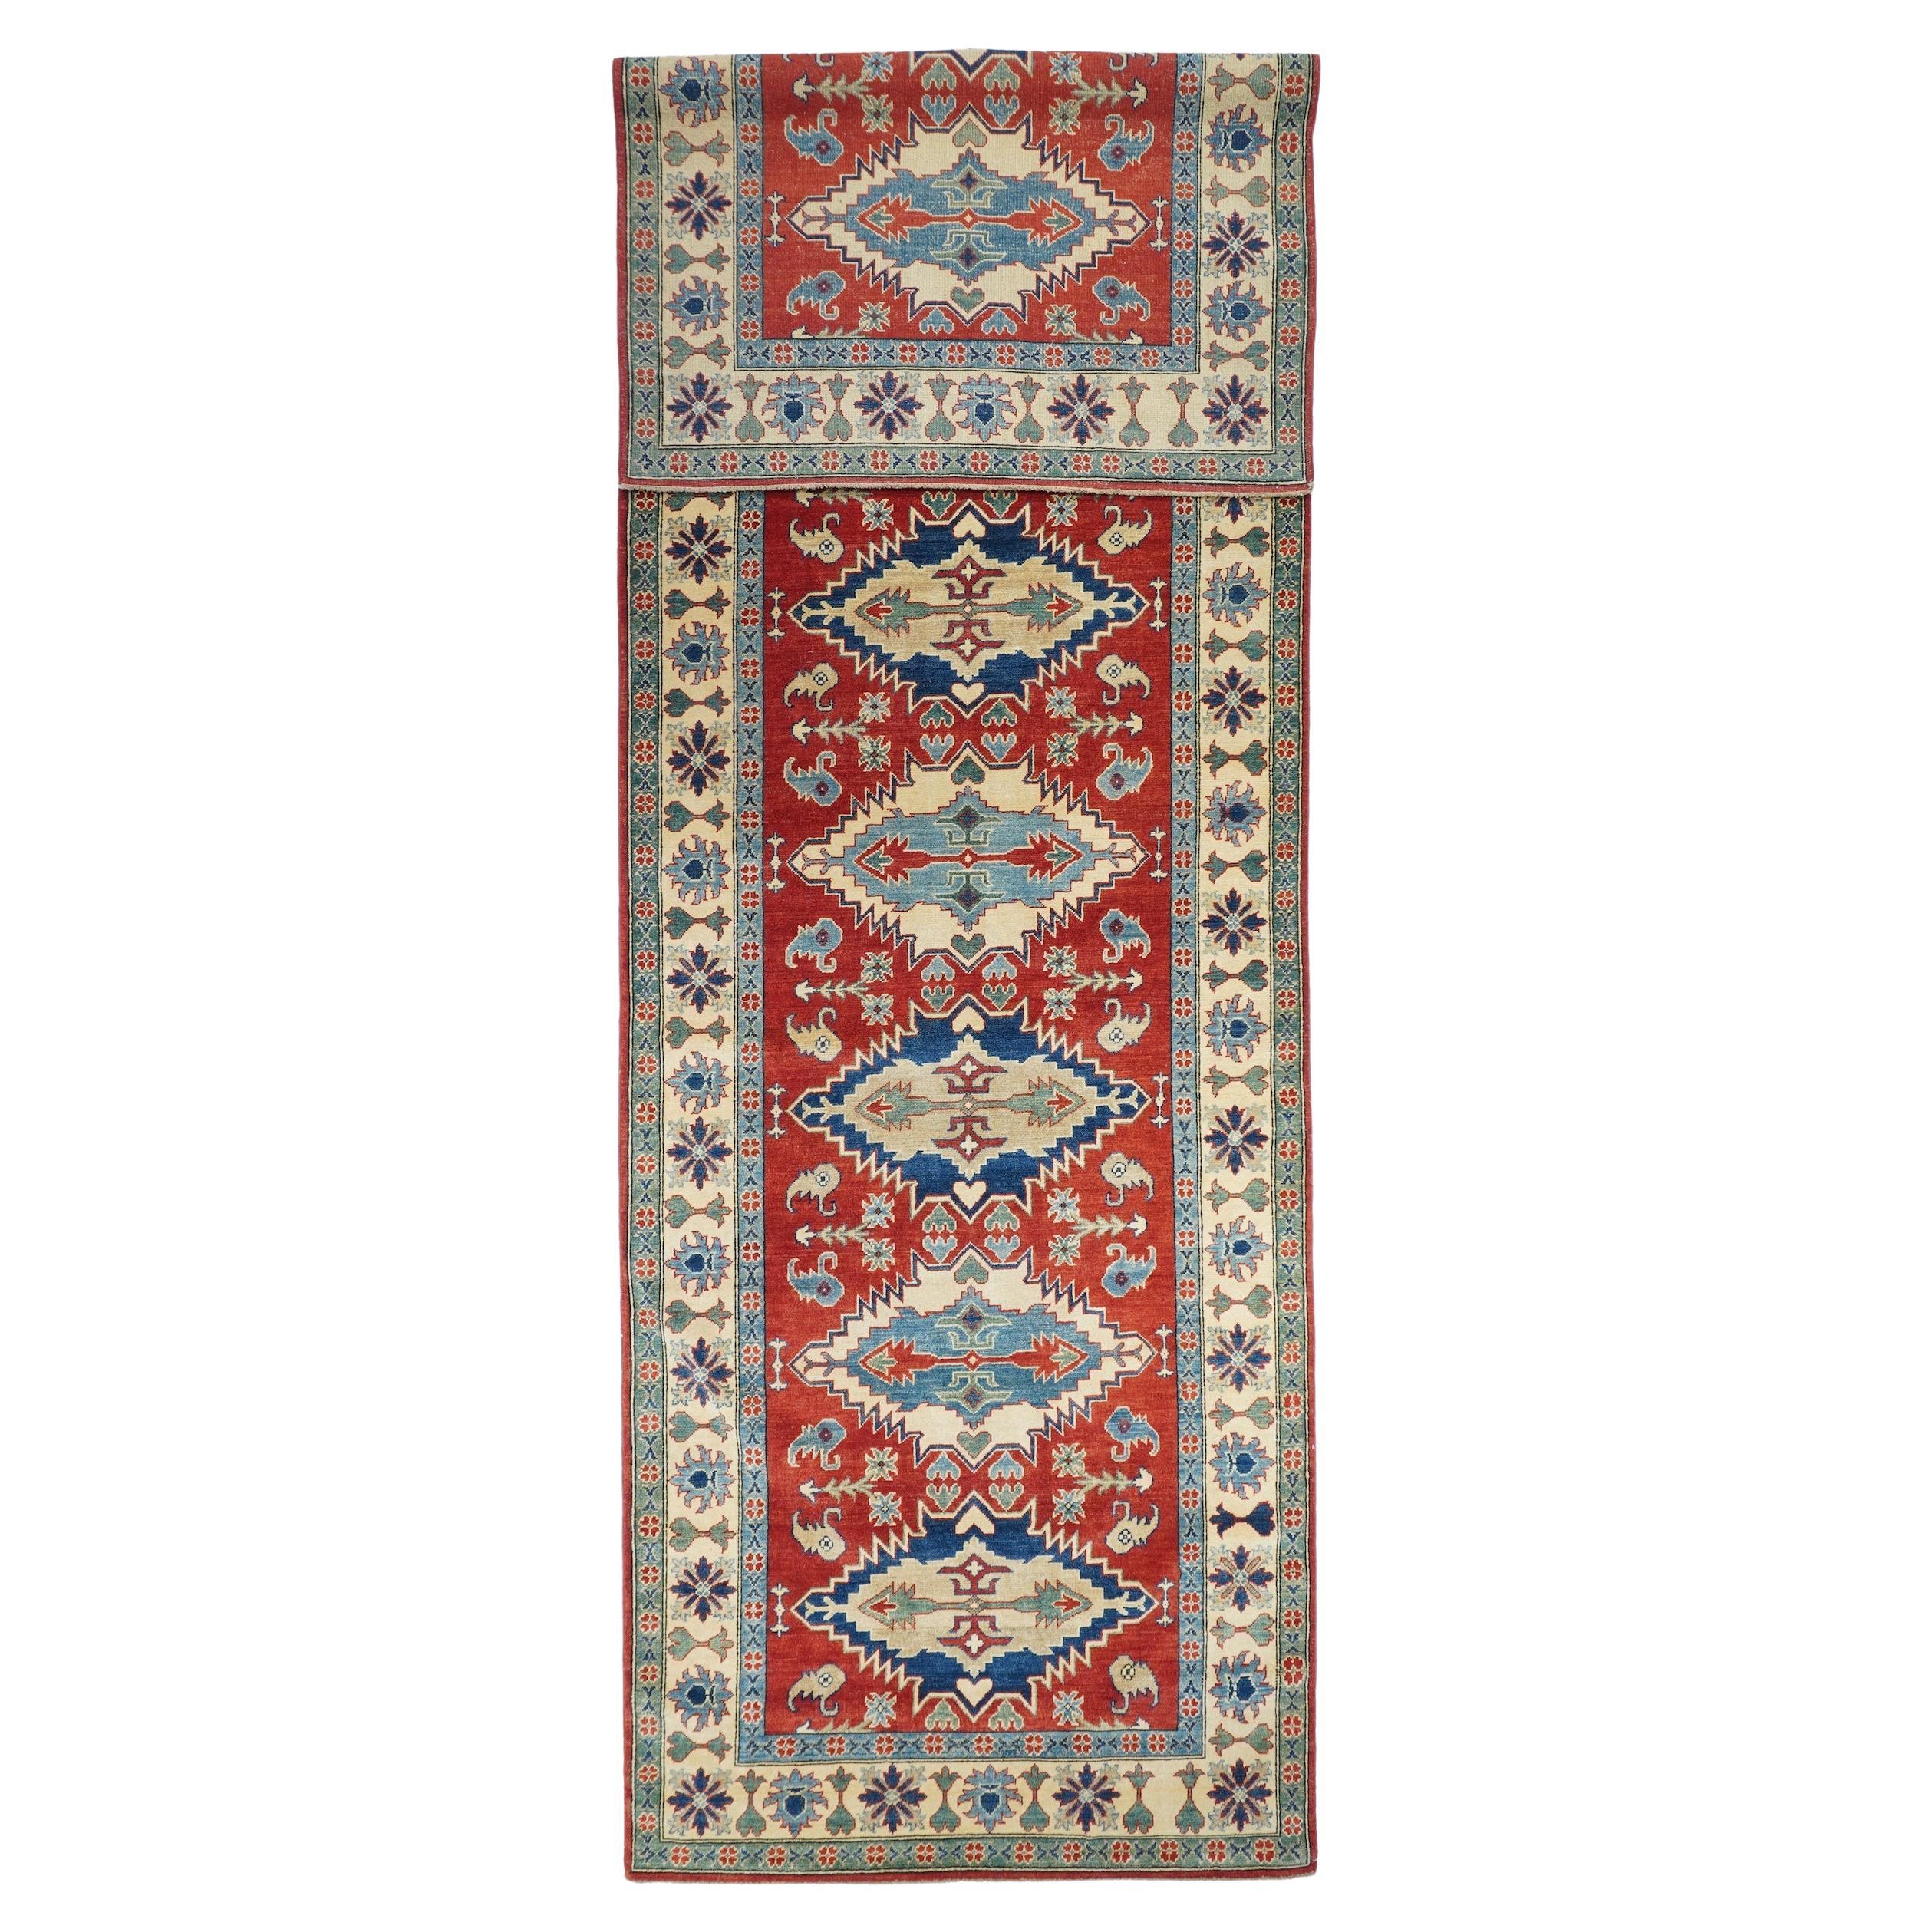 Feiner roter Pak Kazak Läufer, handgeknüpft

Design/One: Diamanten

Ein pakistanischer Teppich (Pak Persian Rug oder Pakistani carpet) ist eine Art handgefertigter Bodenbelag, der traditionell in Pakistan hergestellt wird.

Die Kunst des